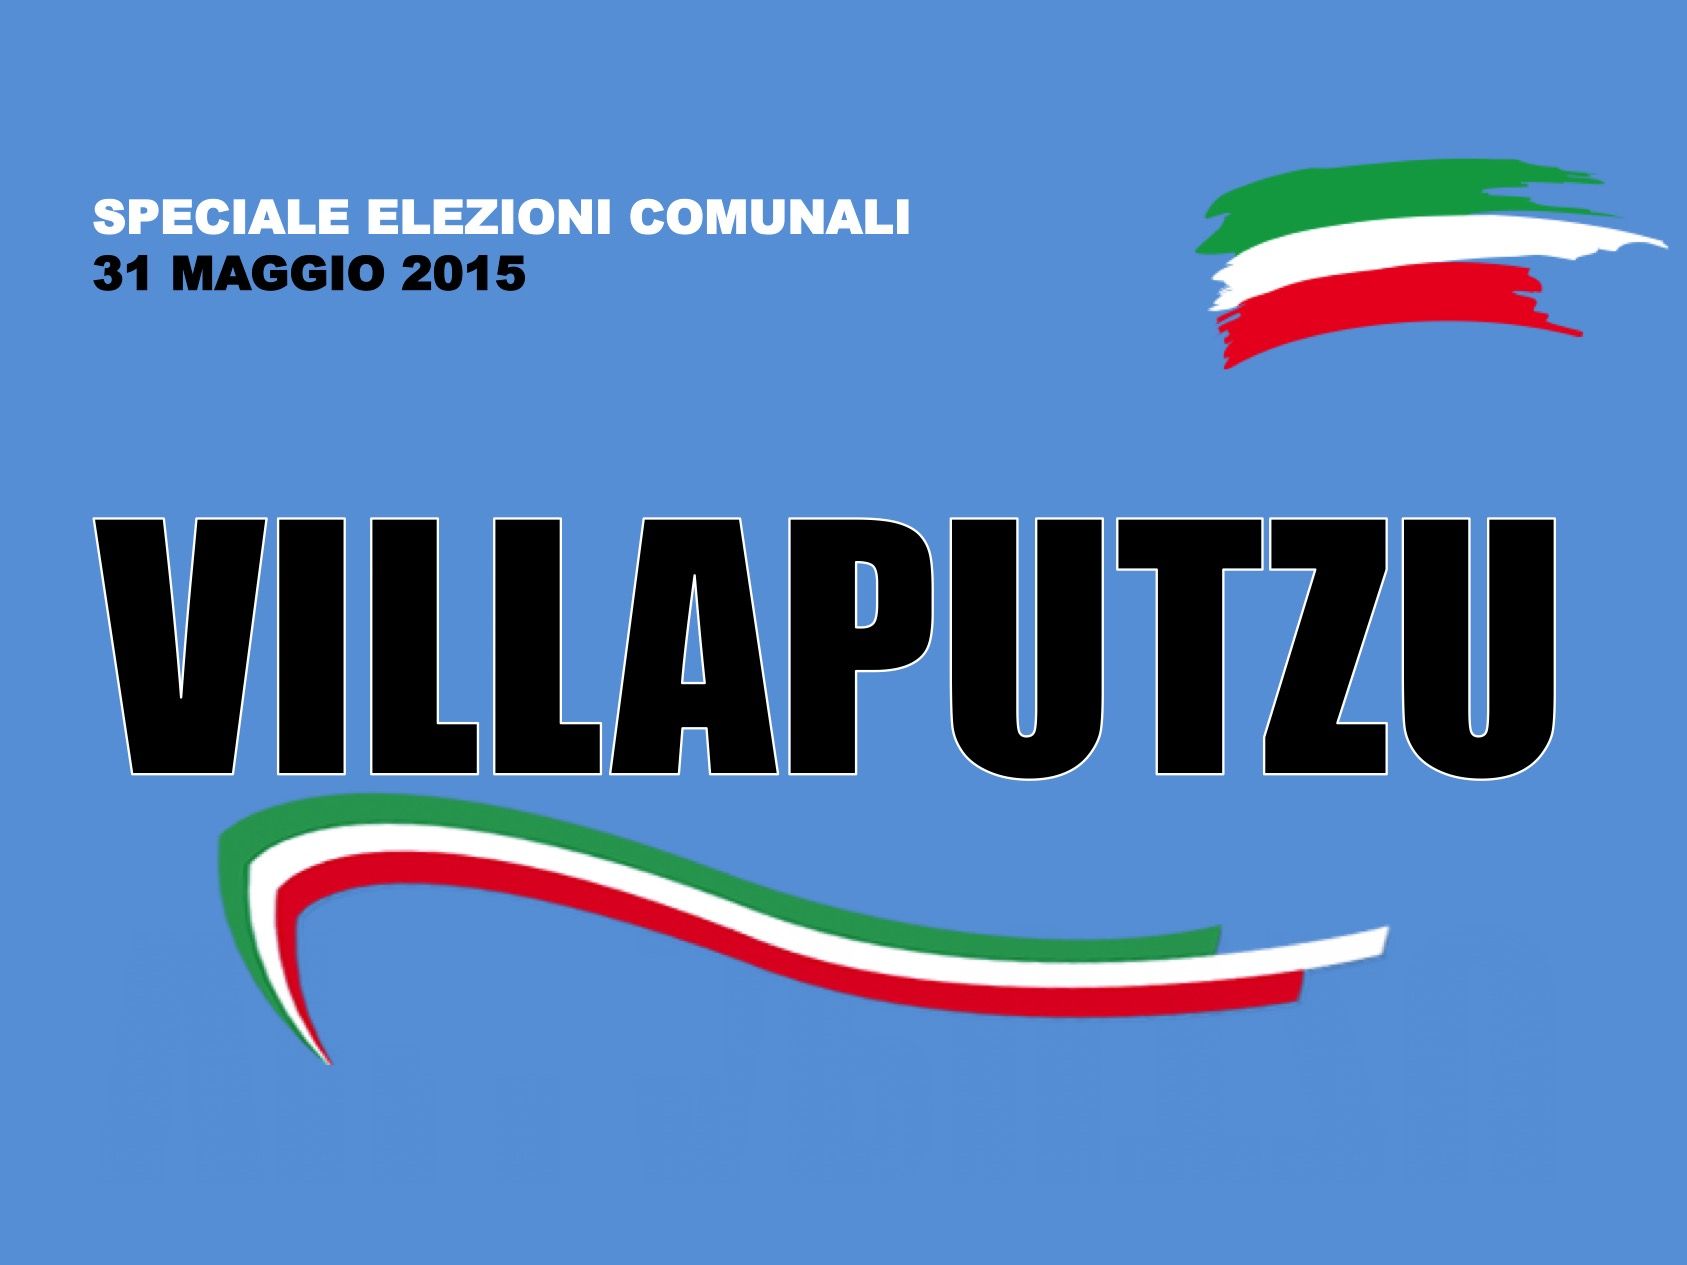 Villaputzu. Elezioni Comunali 31 maggio 2015. I risultati delle votazioni